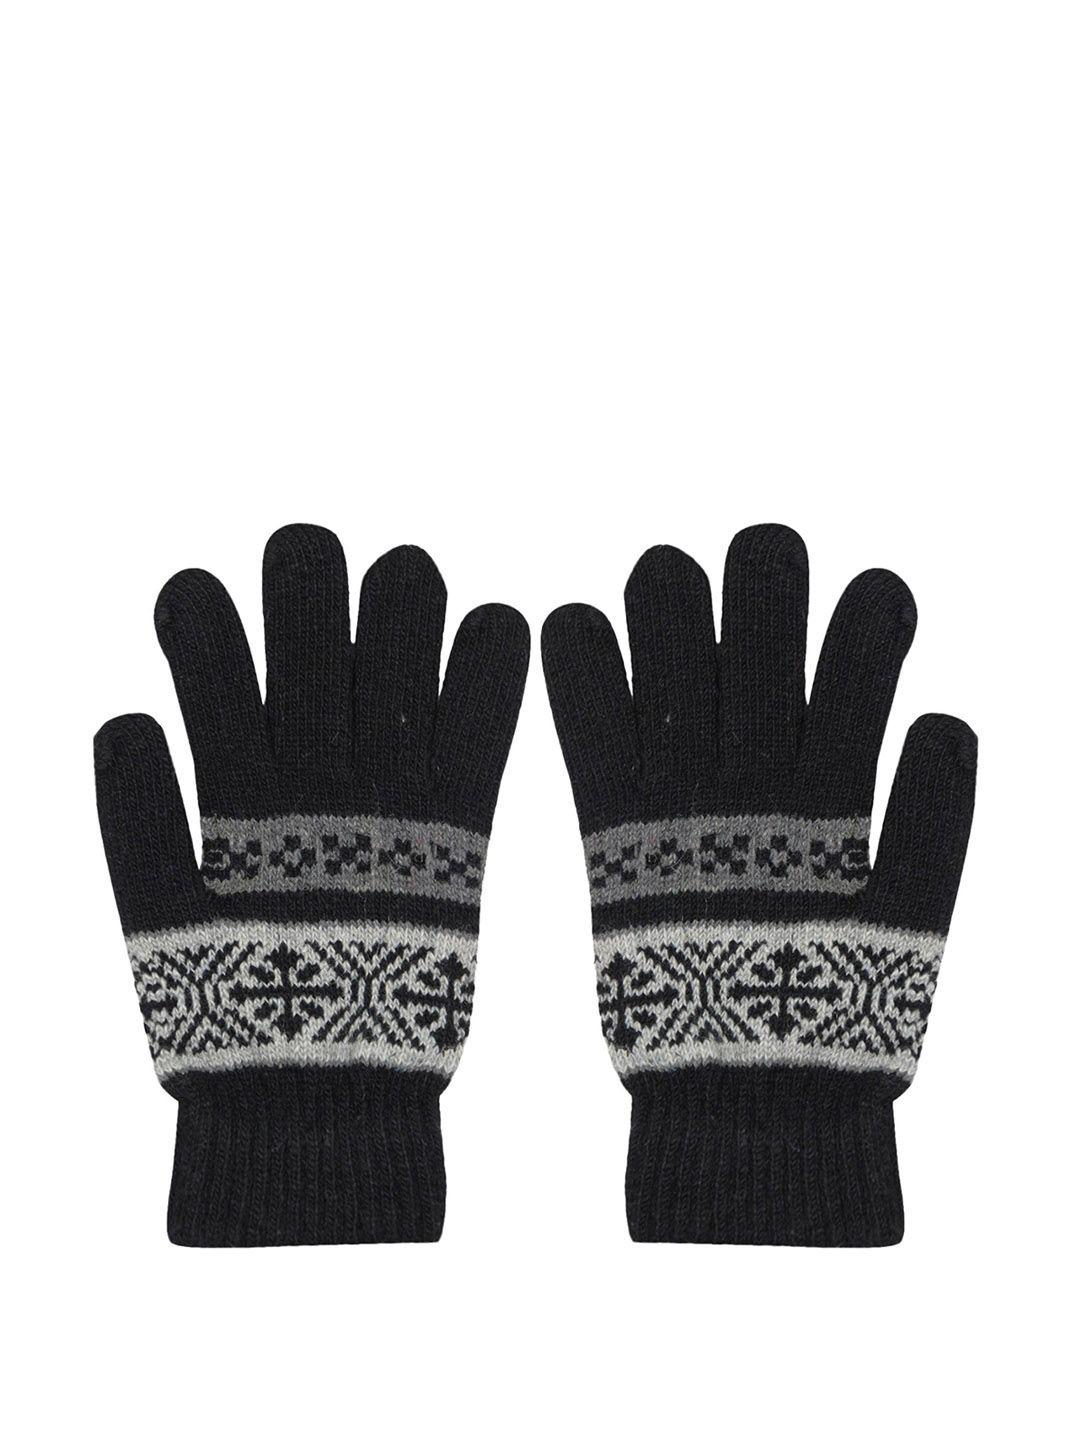 baesd men patterned full finger woolen winter gloves